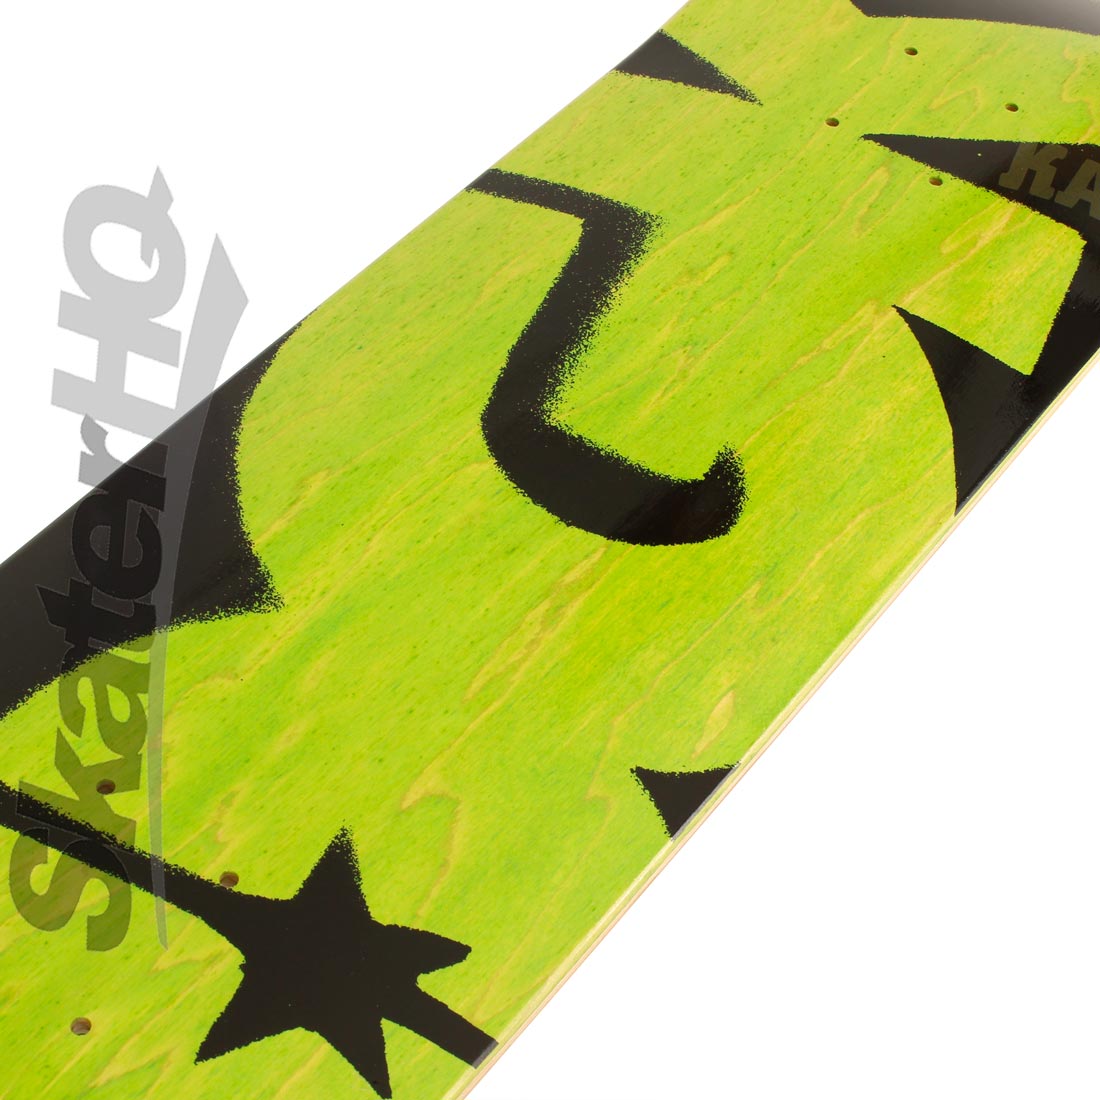 DGK Deck PP Logo 7.75 Deck - Green Skateboard Decks Modern Street